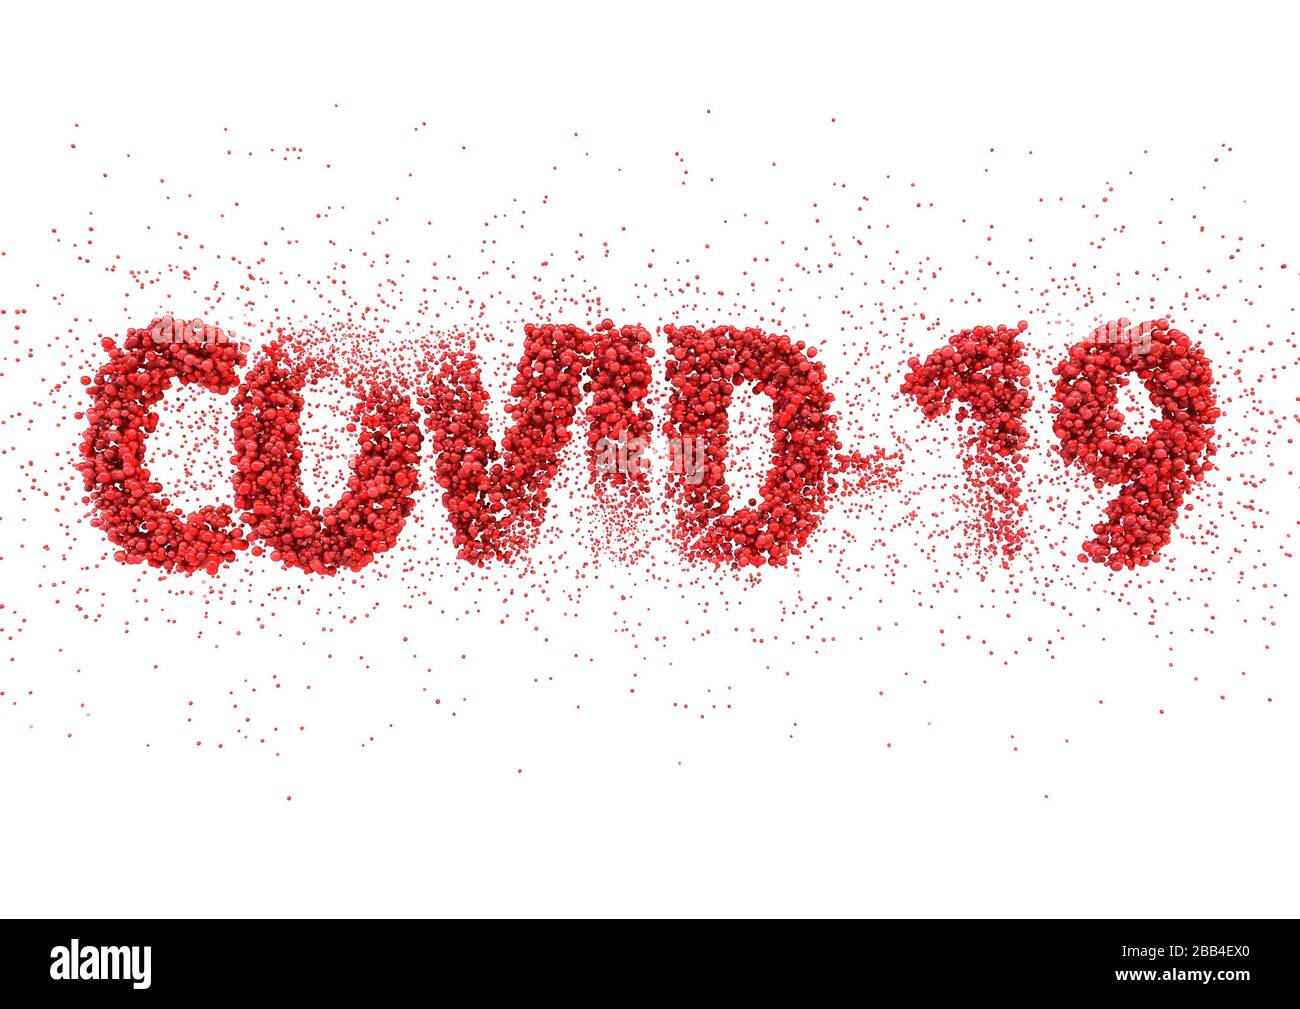 Ein Text aus der Nahansicht, der aus roten Virusmolekülen besteht und das Wort "Kovid 19" auf weißem Hintergrund ausschließt - 3D-Rendering Stockfoto